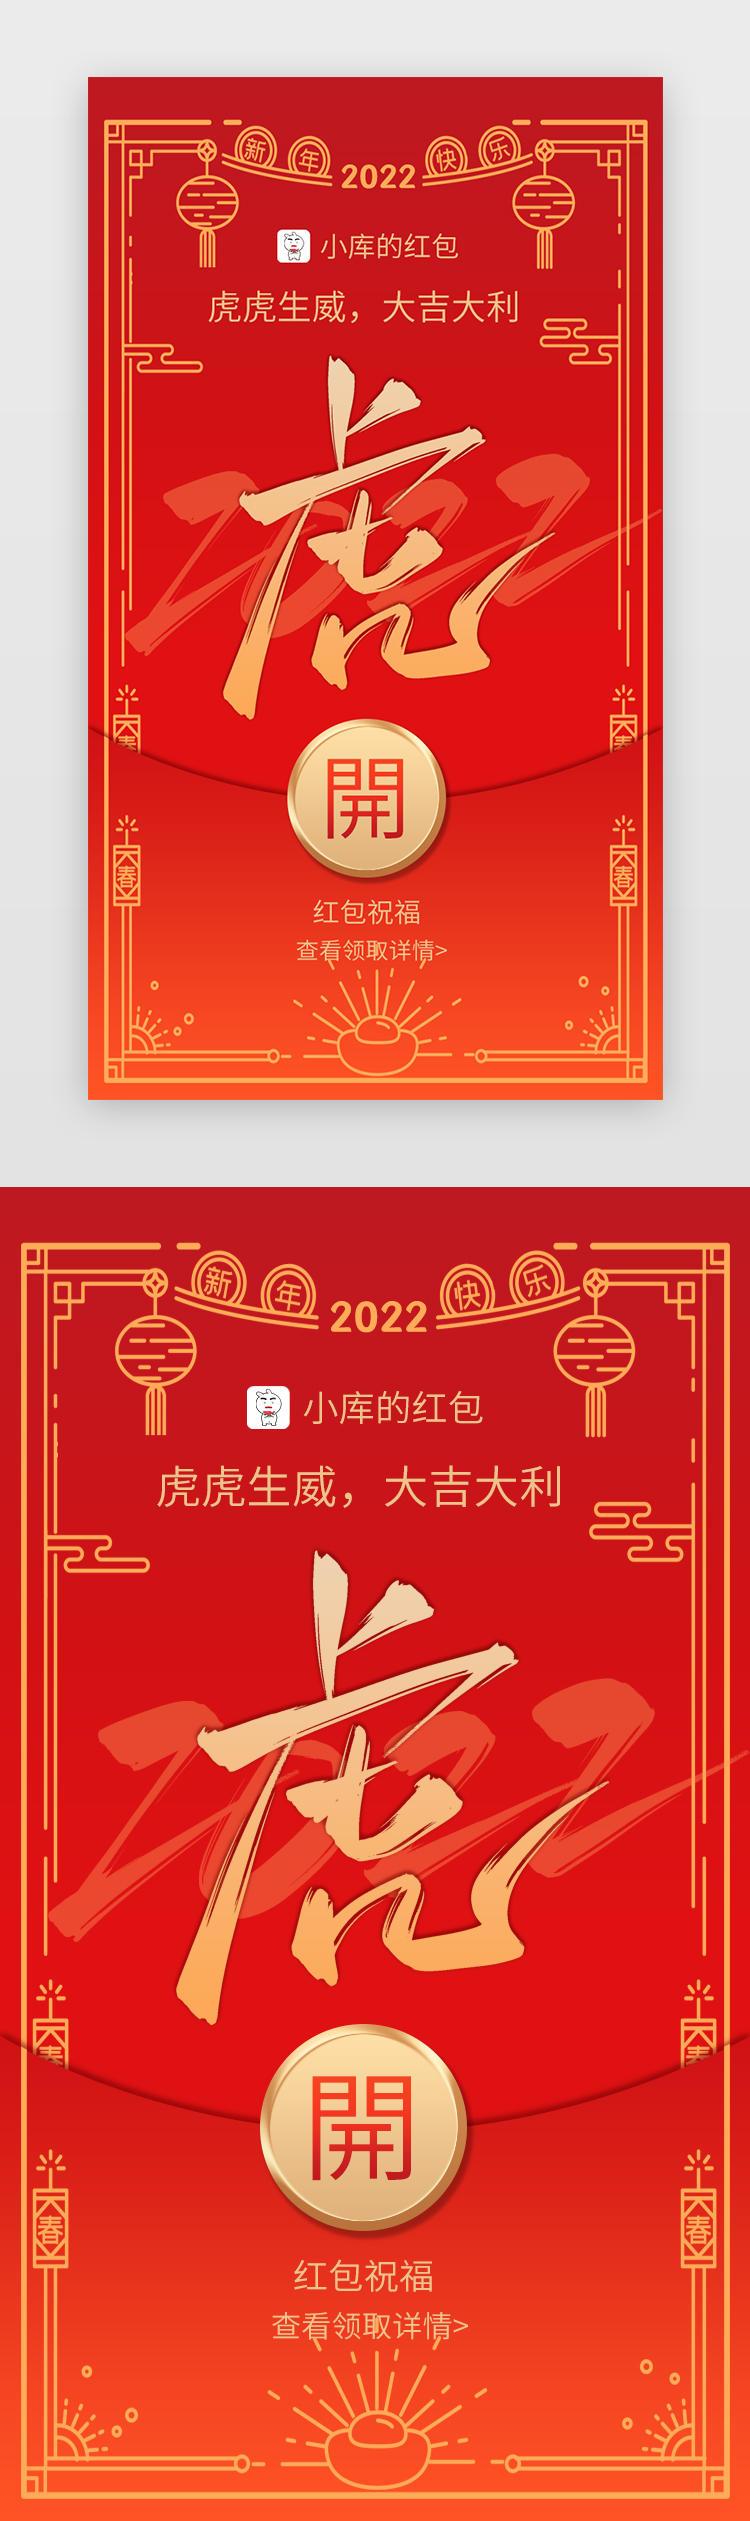 虎年新年红包封面App闪屏红色虎虎生威图片